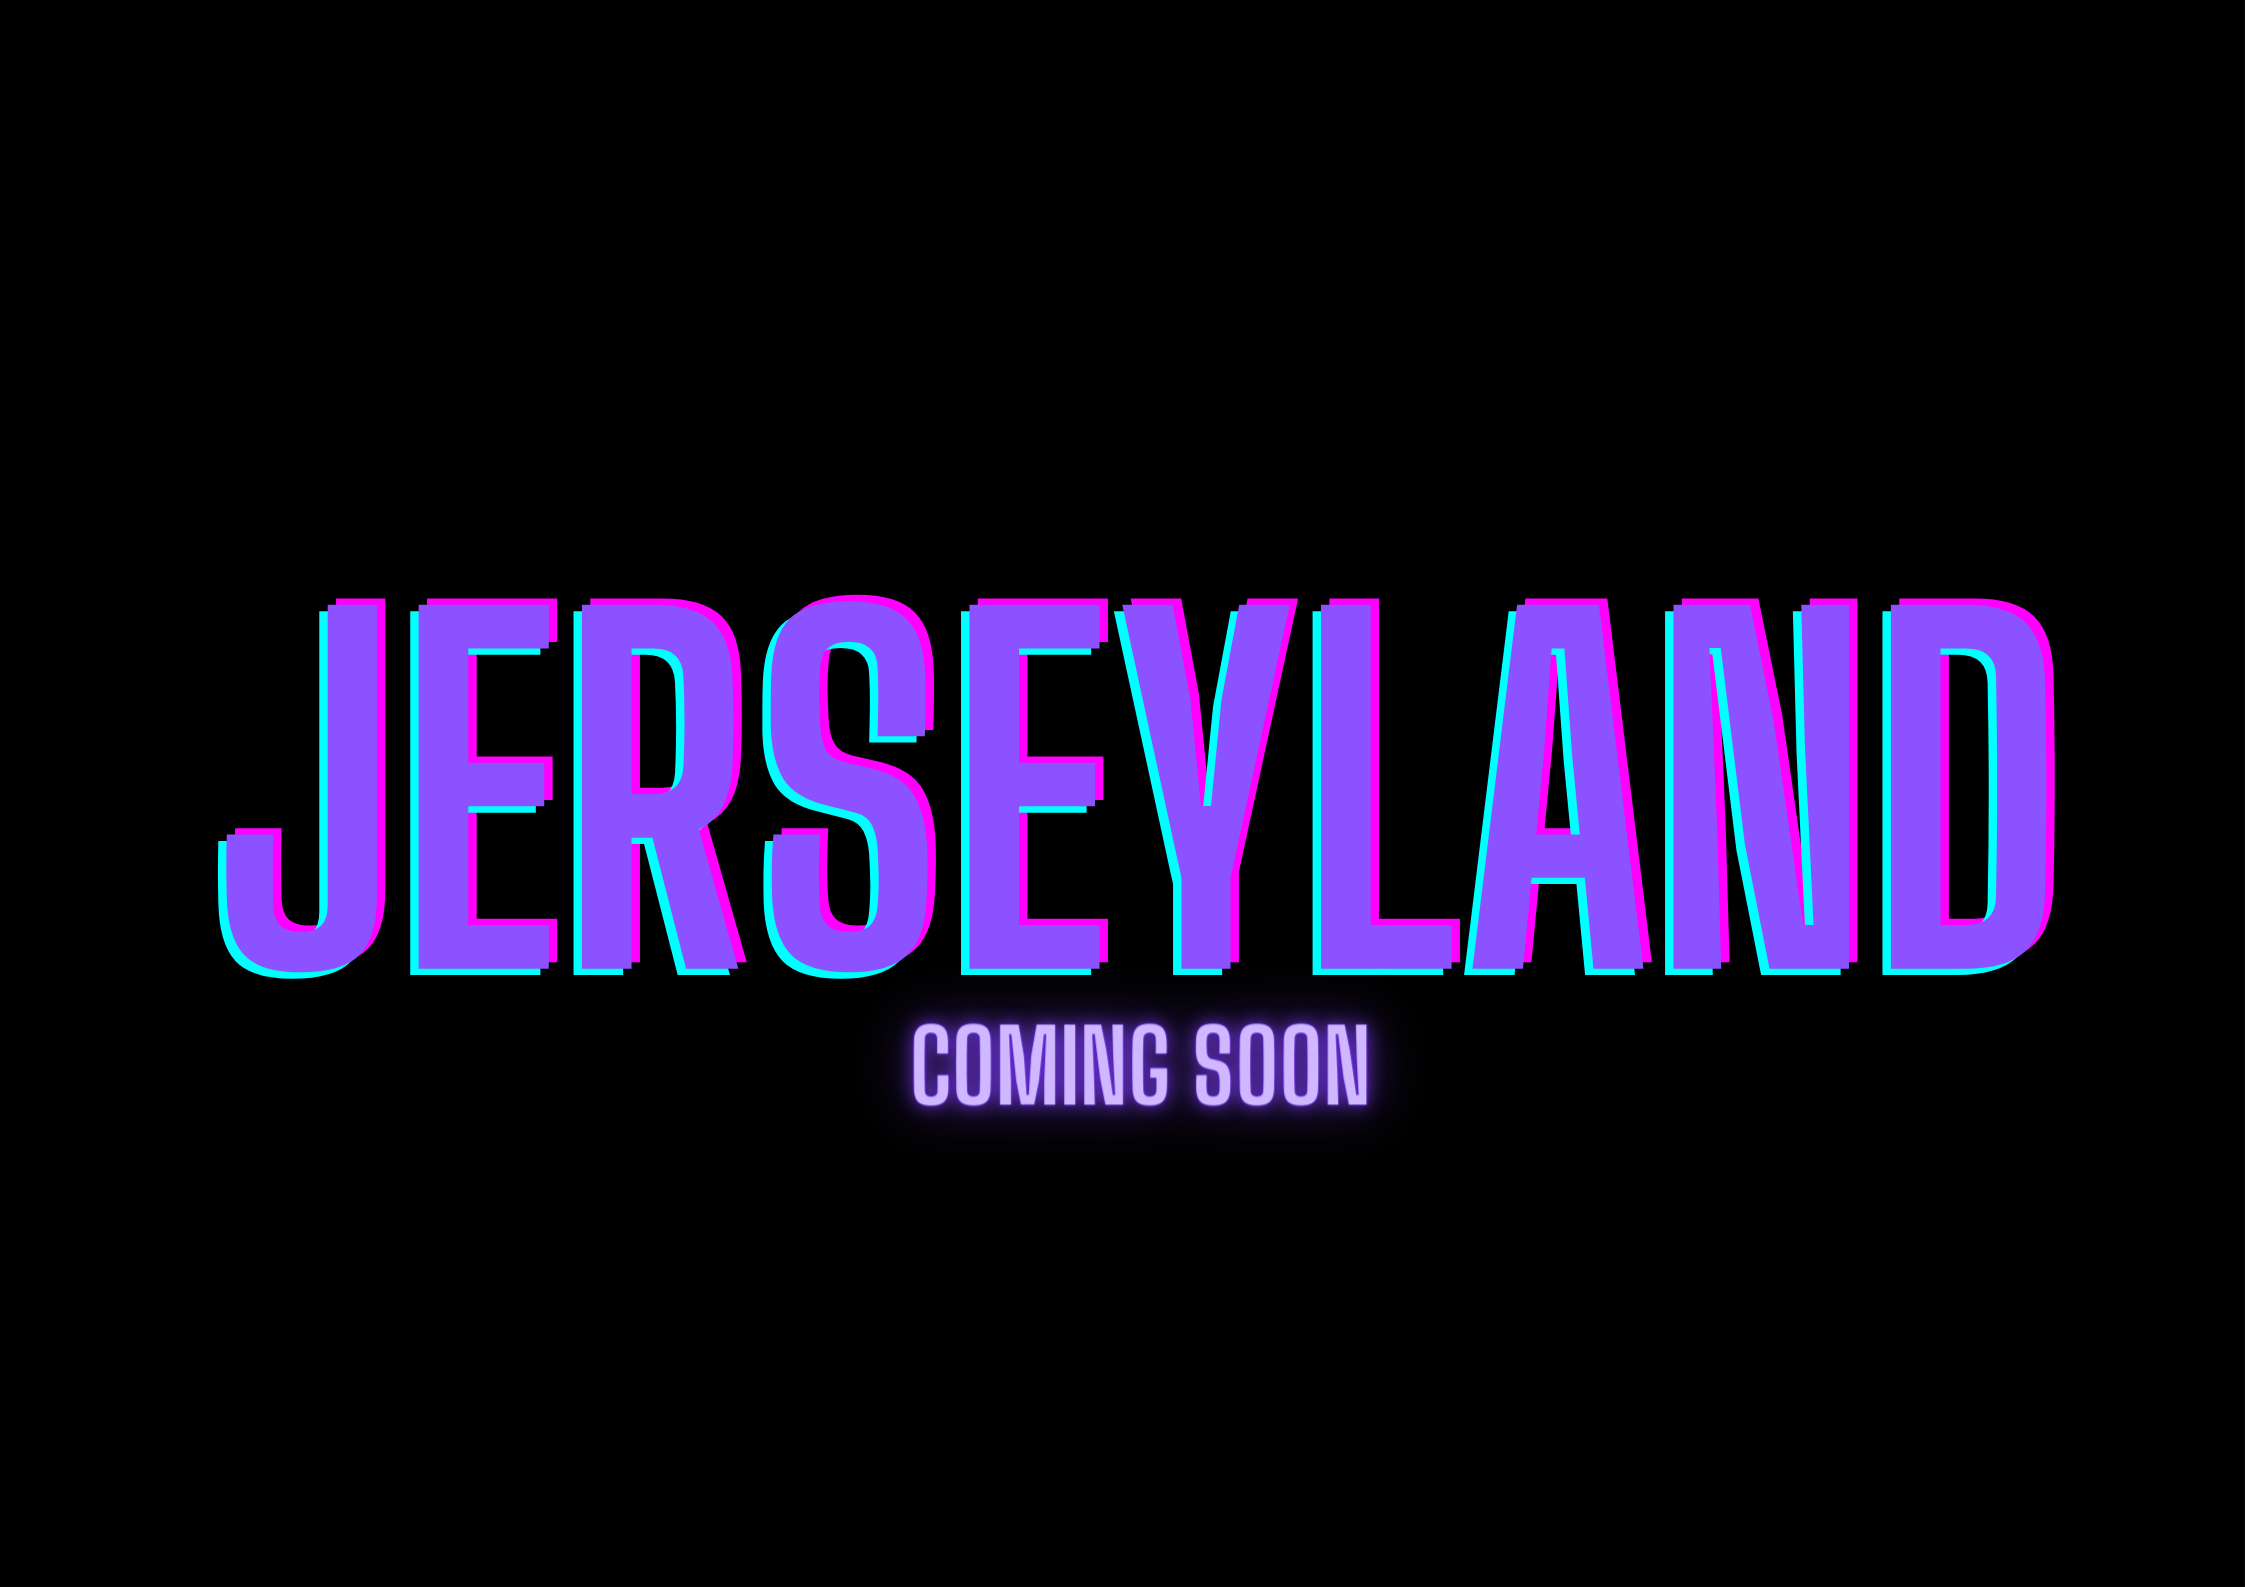 Jerseyland